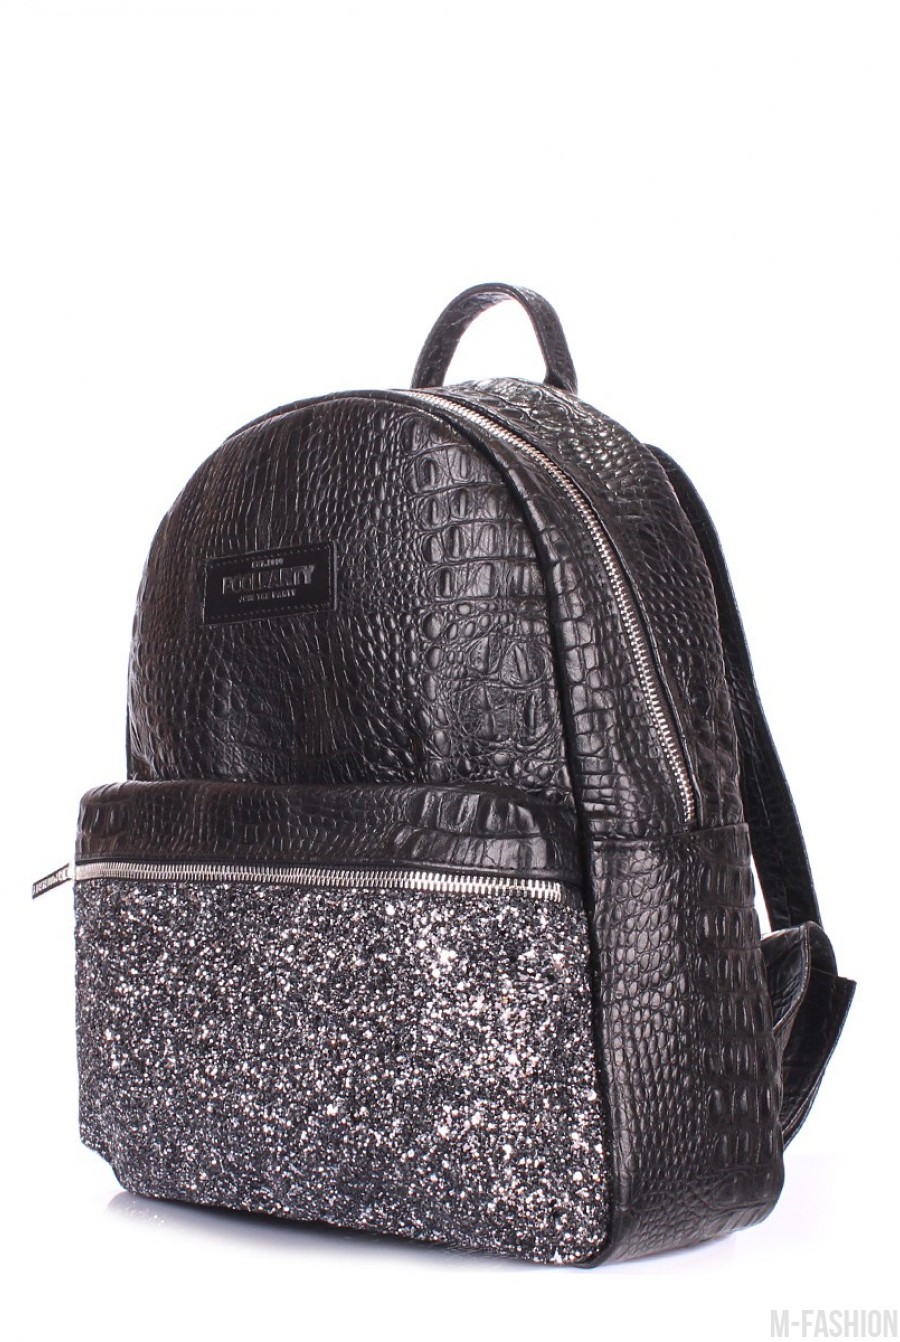 Стильный рюкзак с принтом под рептилию для настоящих модниц- Фото 2